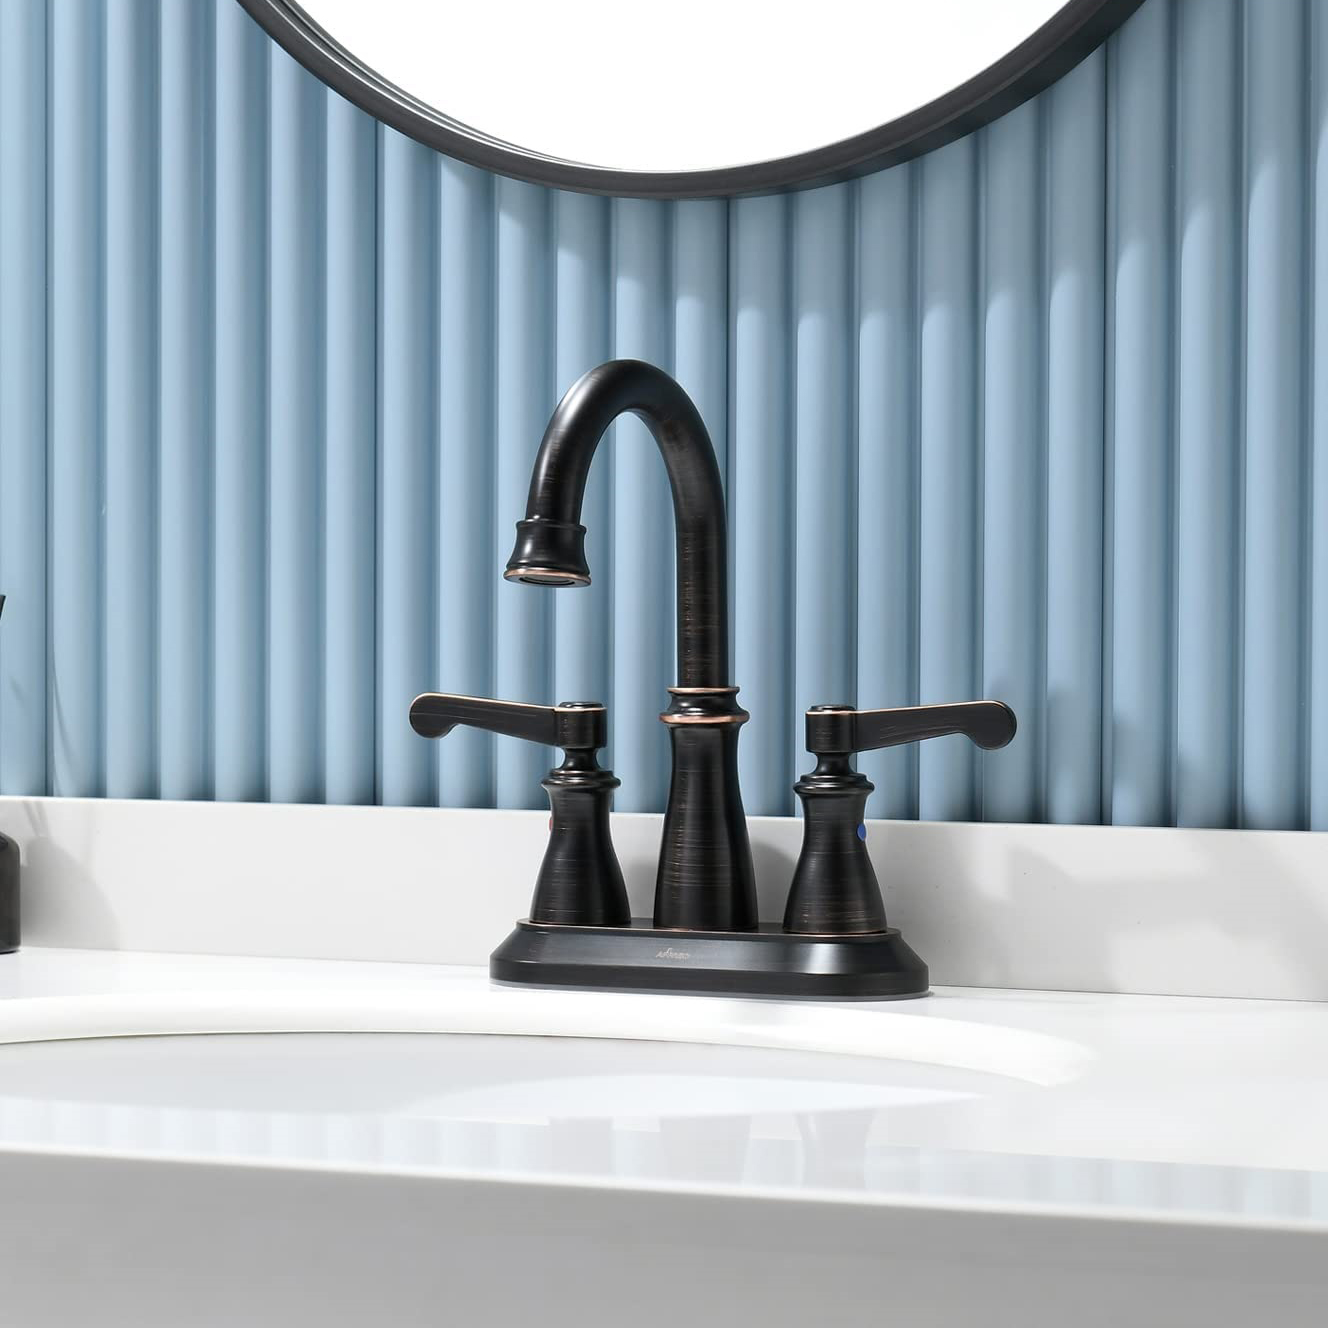 Choisir entre des robinets de salle de bains noir mat et chromés : un guide élégant pour rehausser la décoration de votre salle de douche